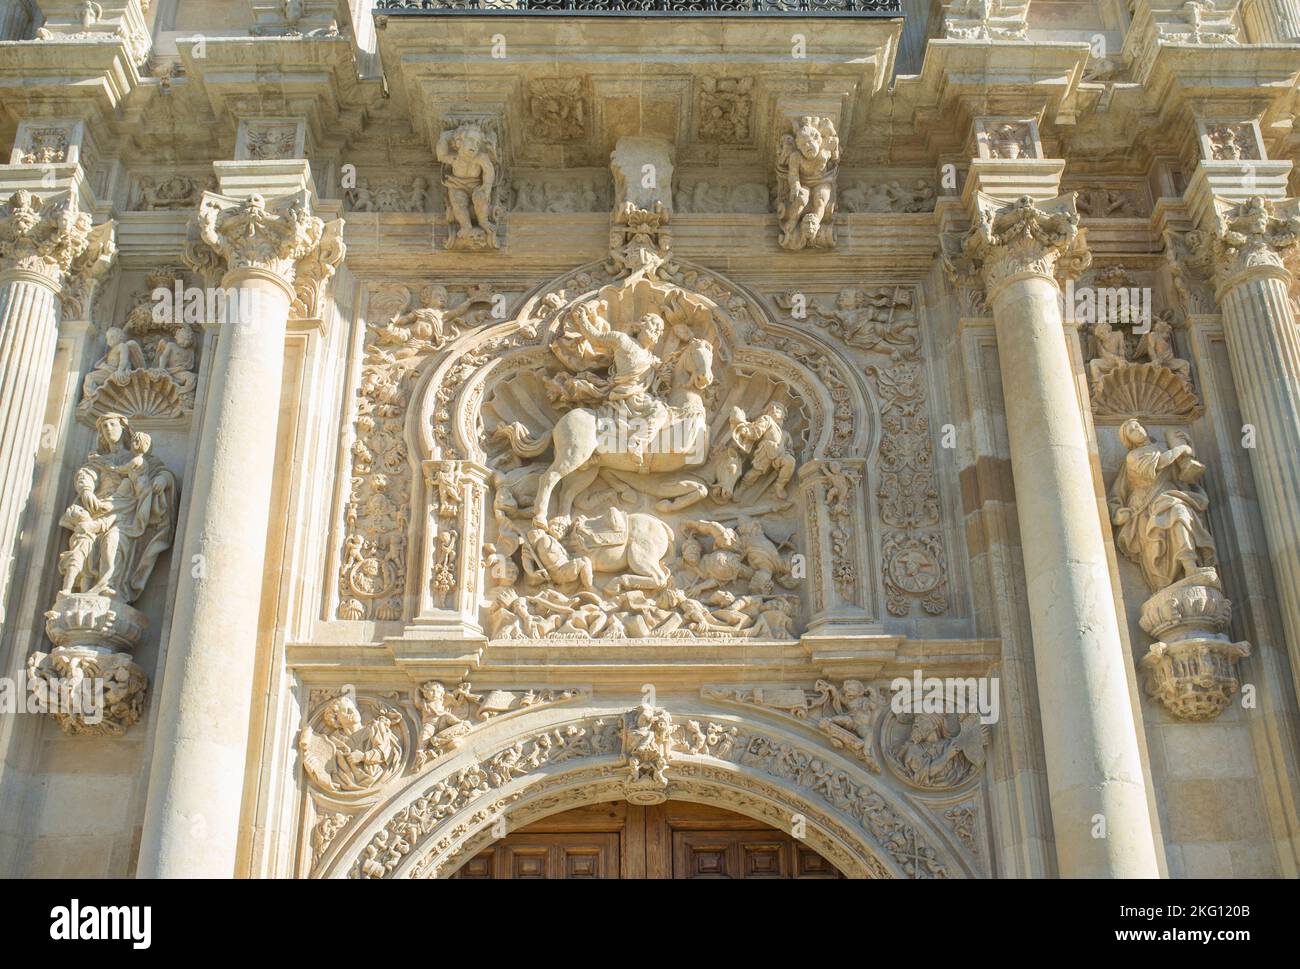 Skulptur des heiligen Jakobus des Mauren-Totschlägers. Kloster von San Marcos, Leon, Spanien. Das Gebäude aus dem 12. Jahrhundert beherbergt heute ein luxuriöses Parador-Hotel Stockfoto